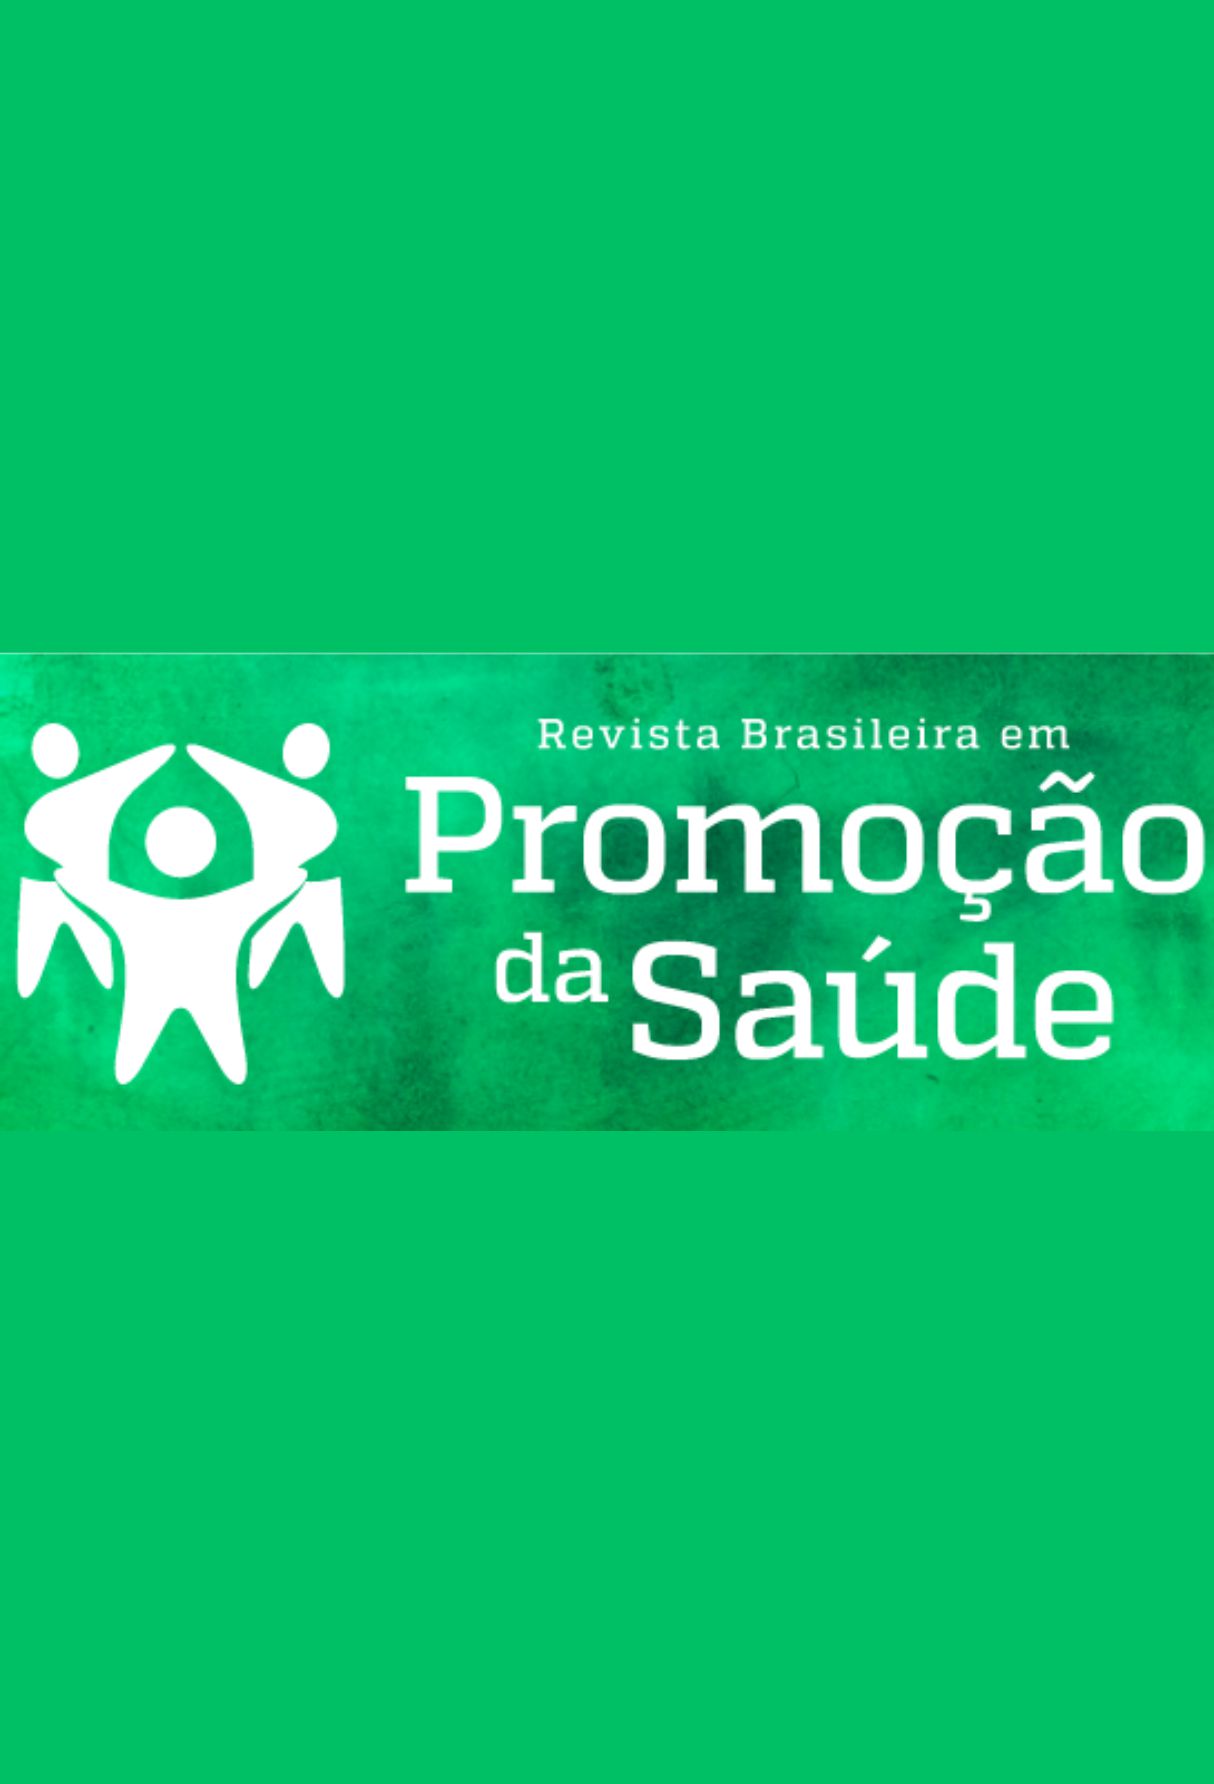 Capa: Revista Brasileira em Promoção da Saúde